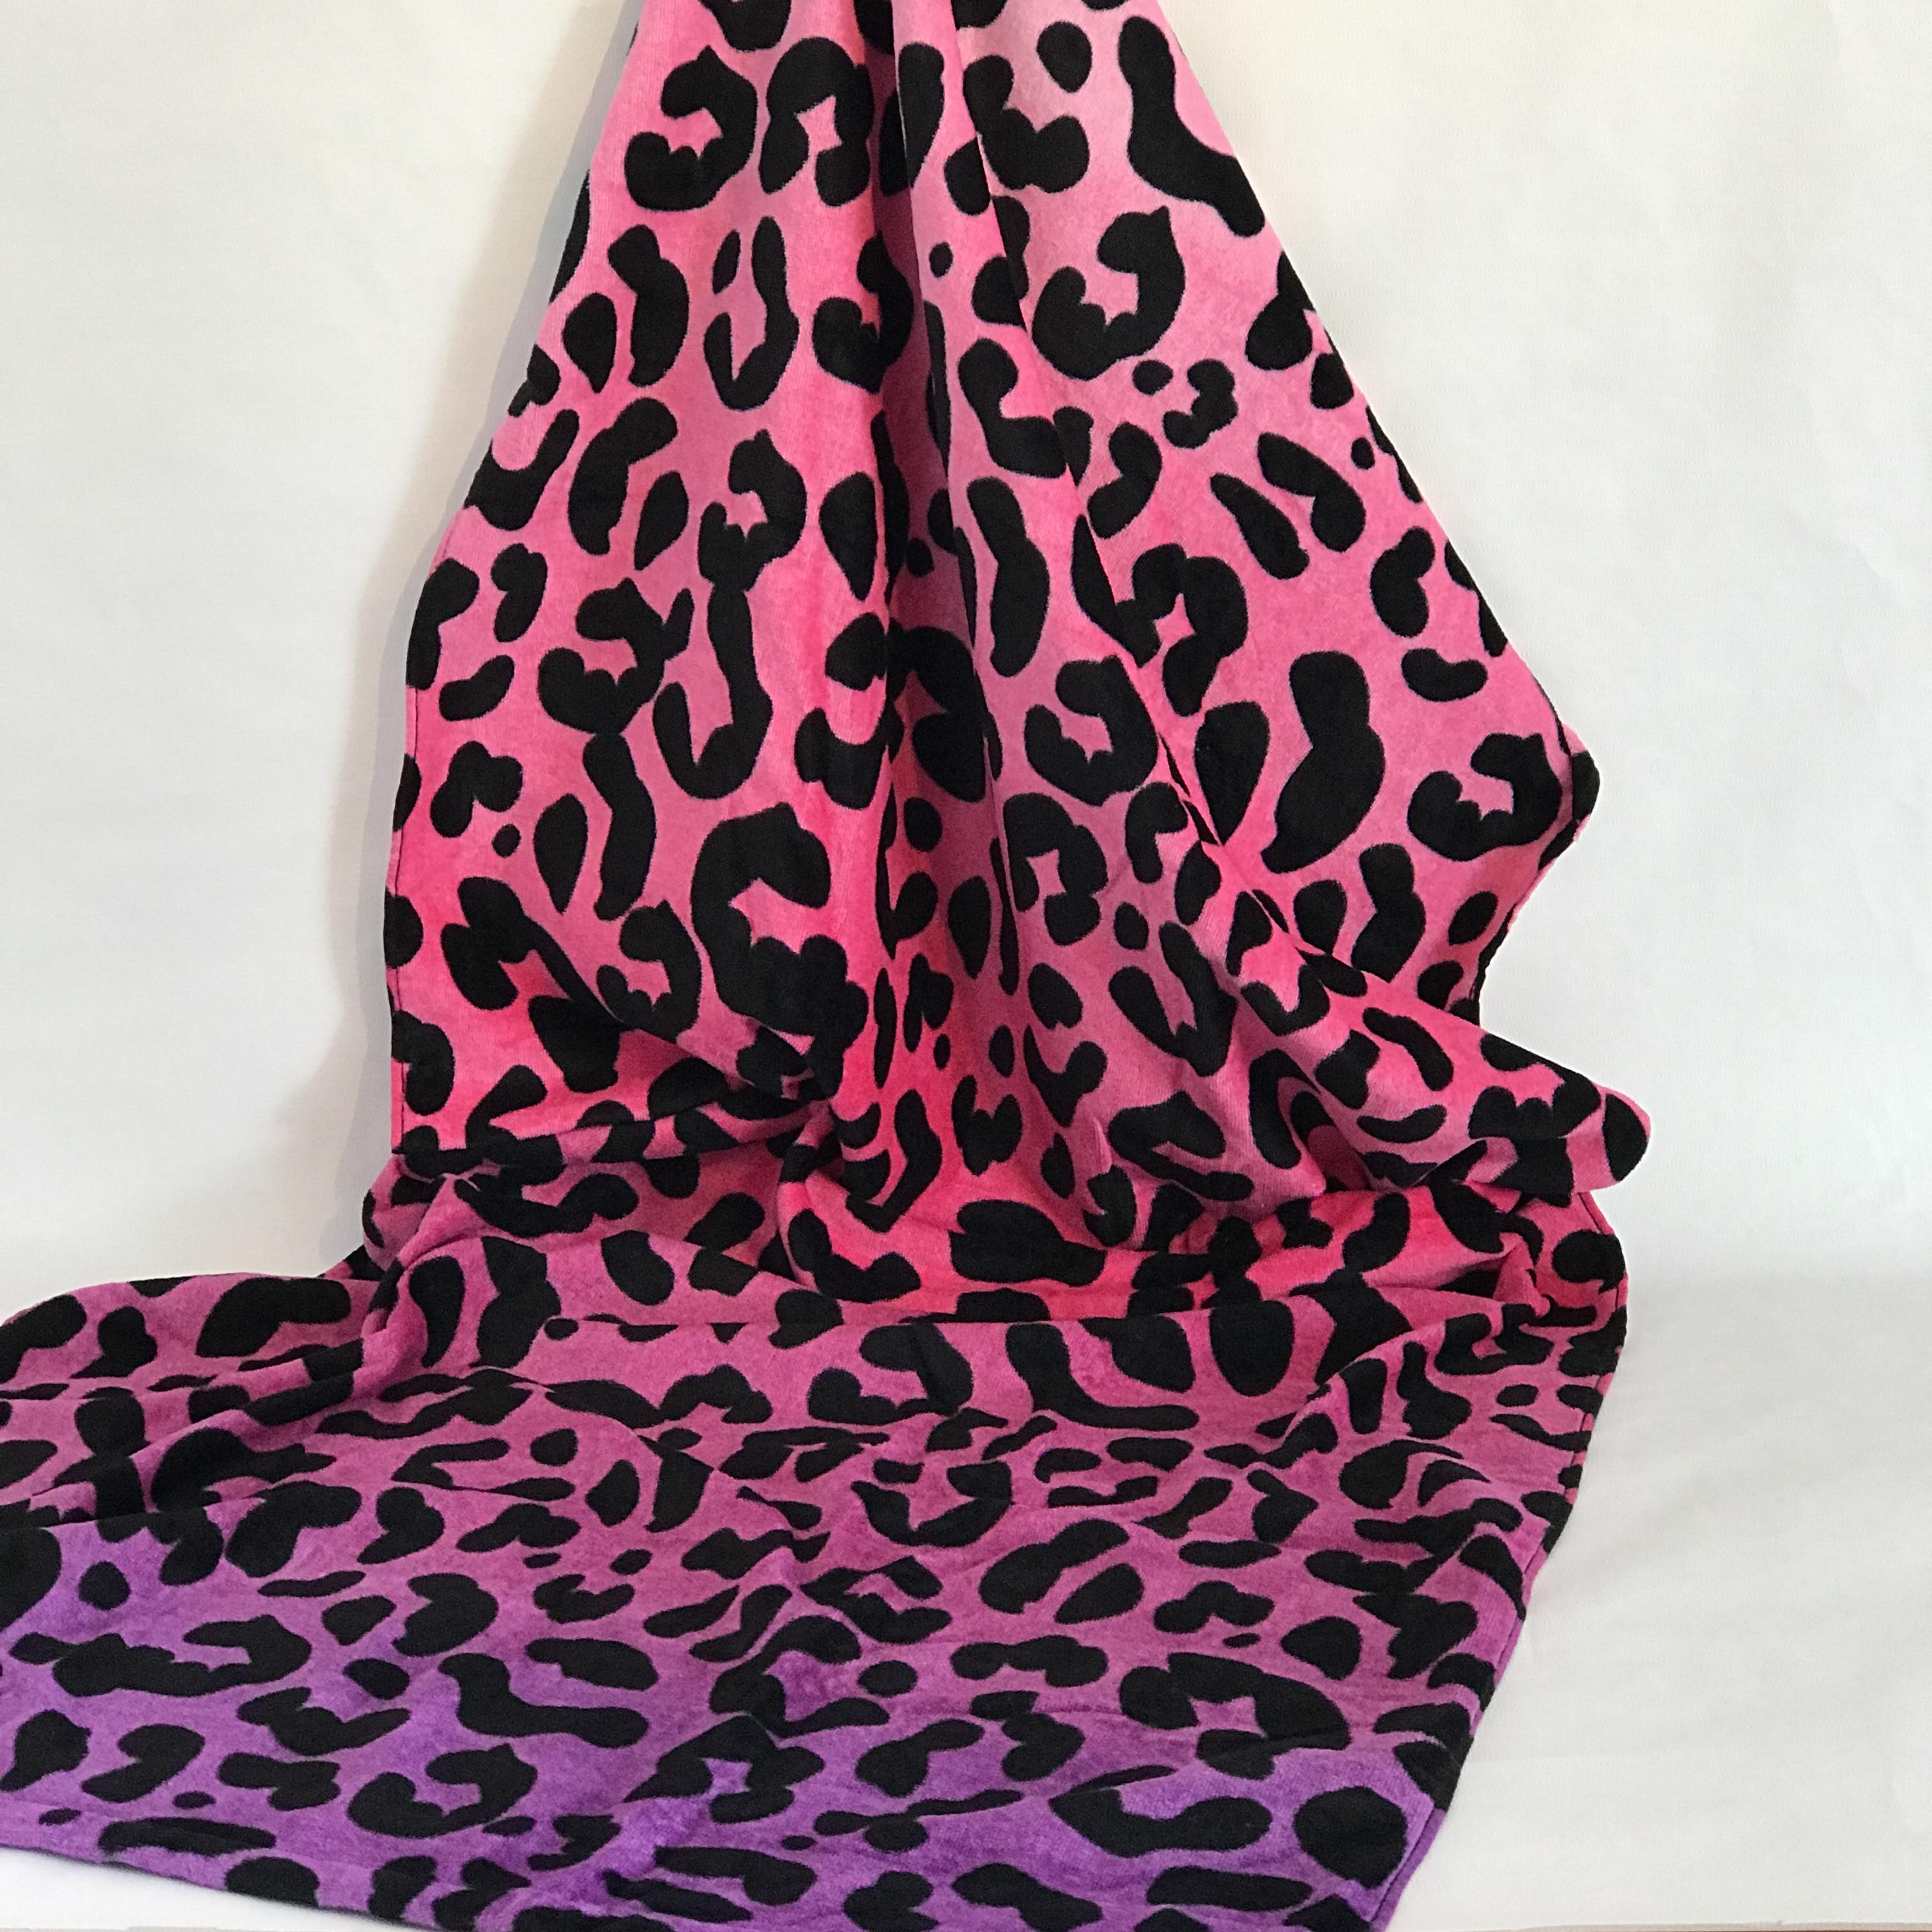 Badetuch "Leopard" pink